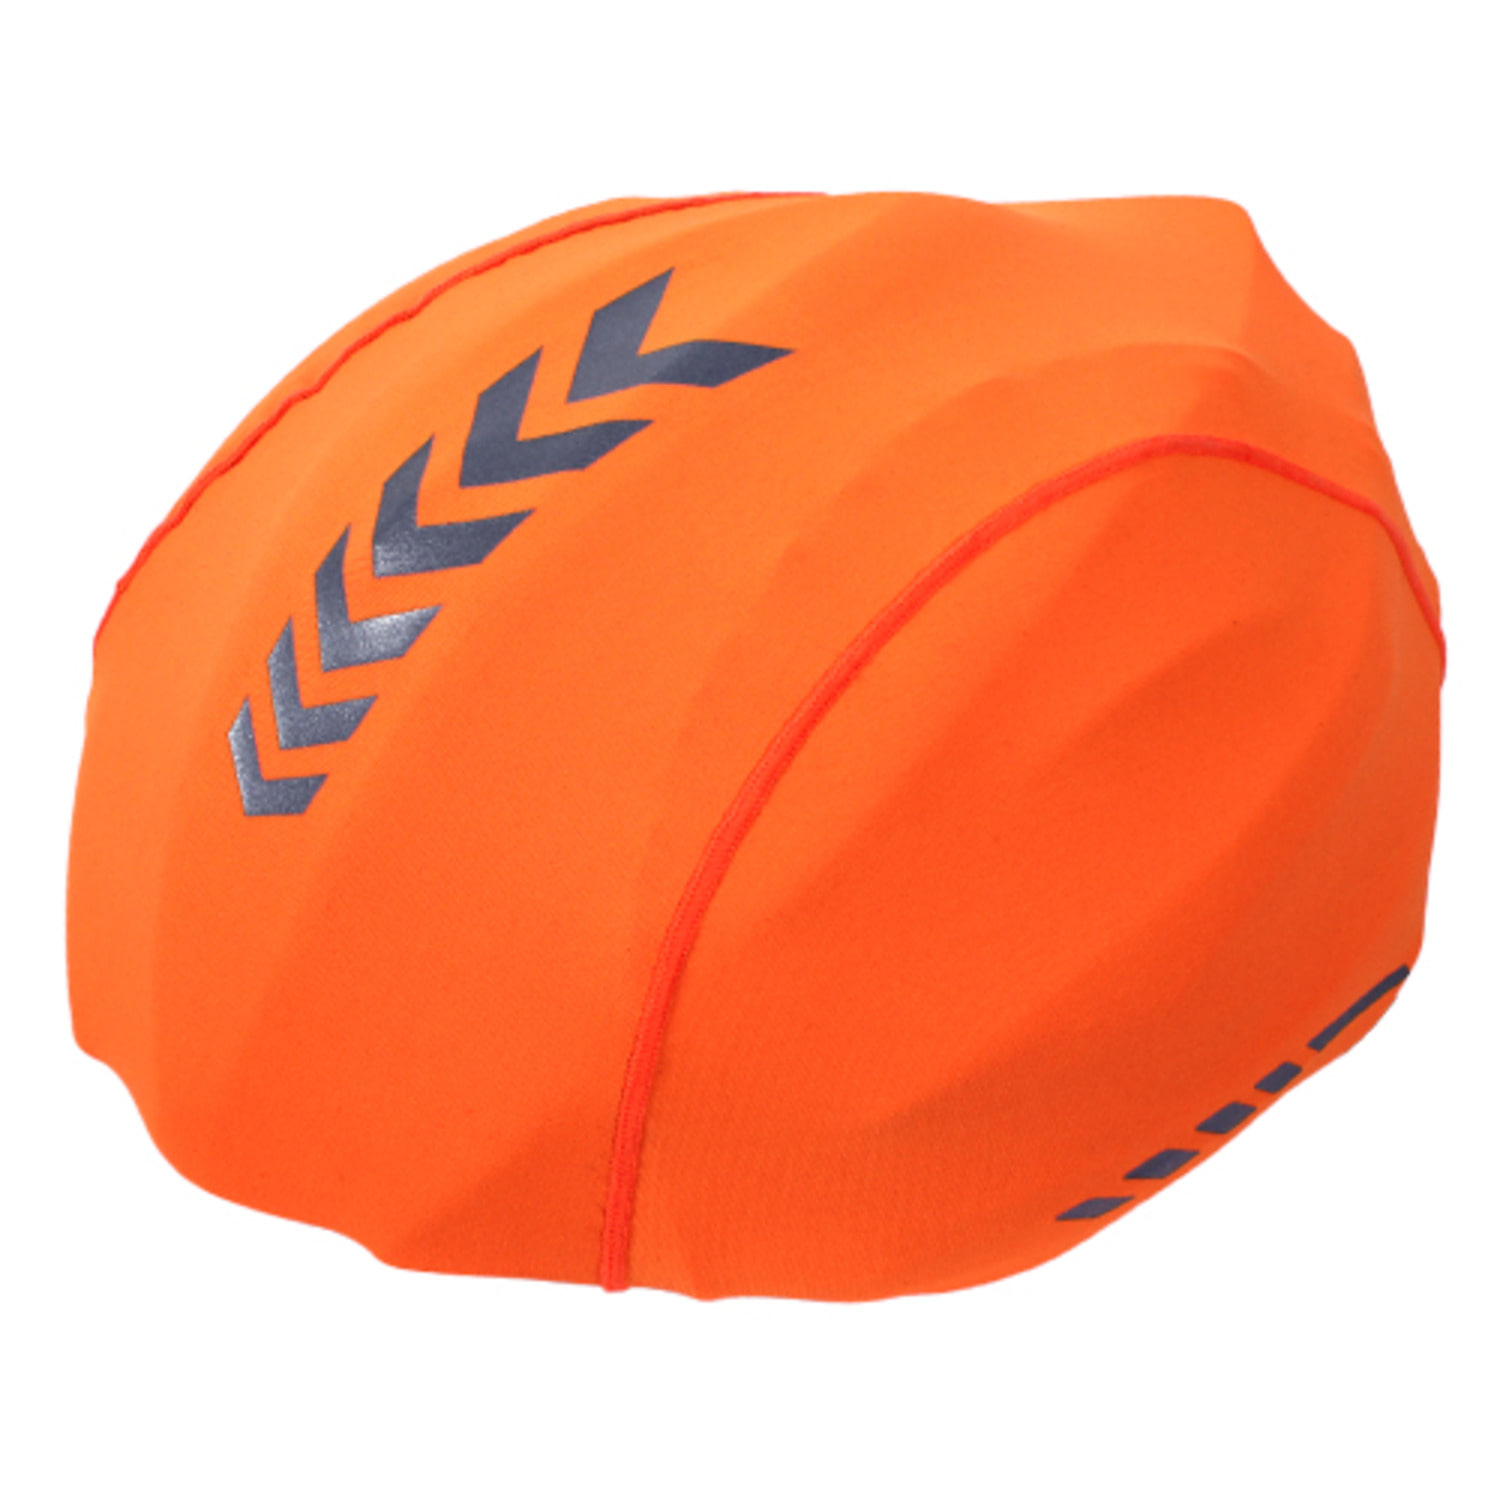 MCN 방풍방수 싸이클 자전거 헬맷커버 헬멧커버 형광오렌지